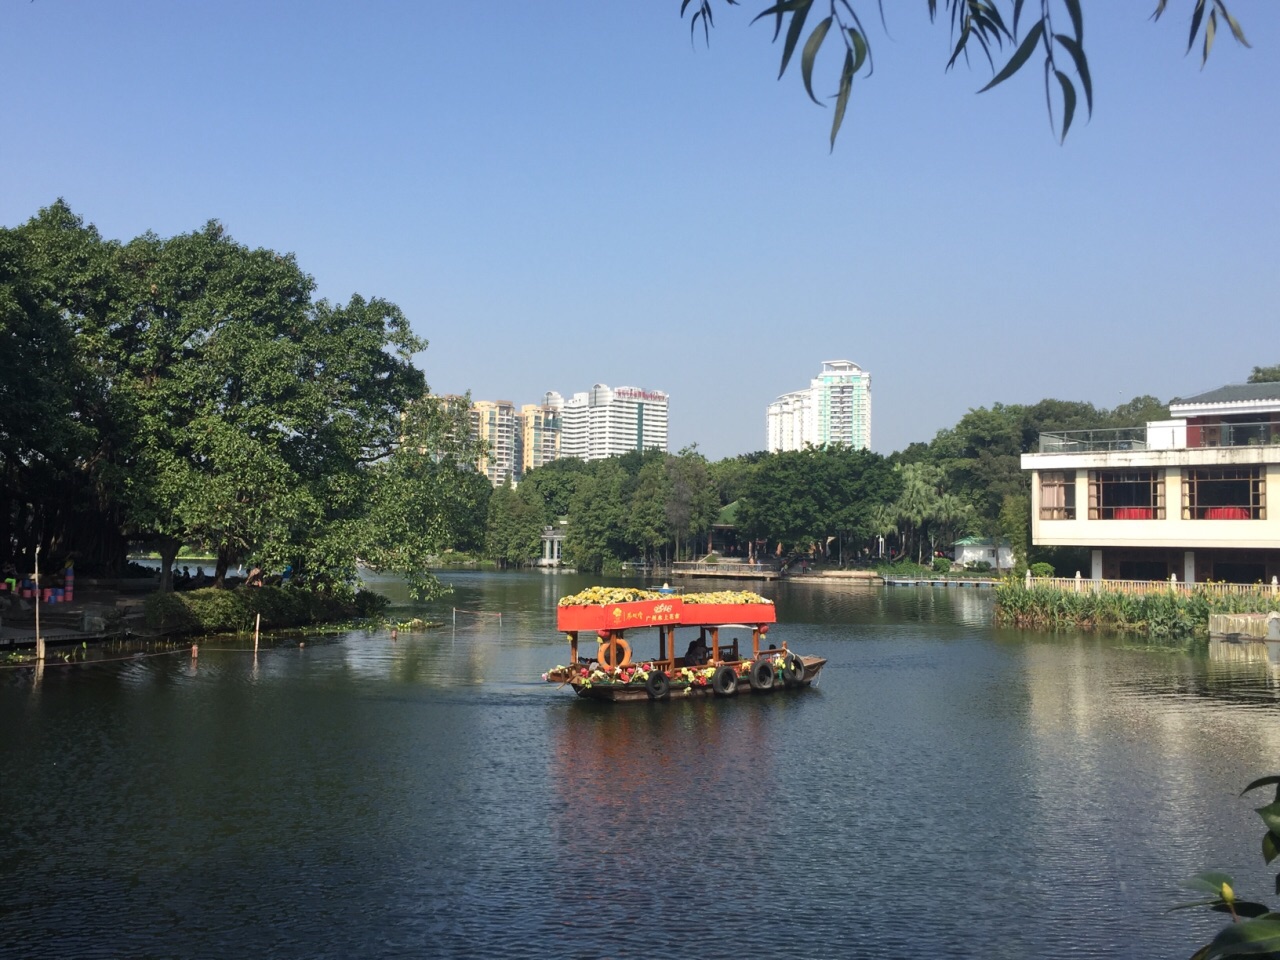 【携程攻略】广州荔湾湖公园景点,荔湾湖公园是以湖为主的公园,位于